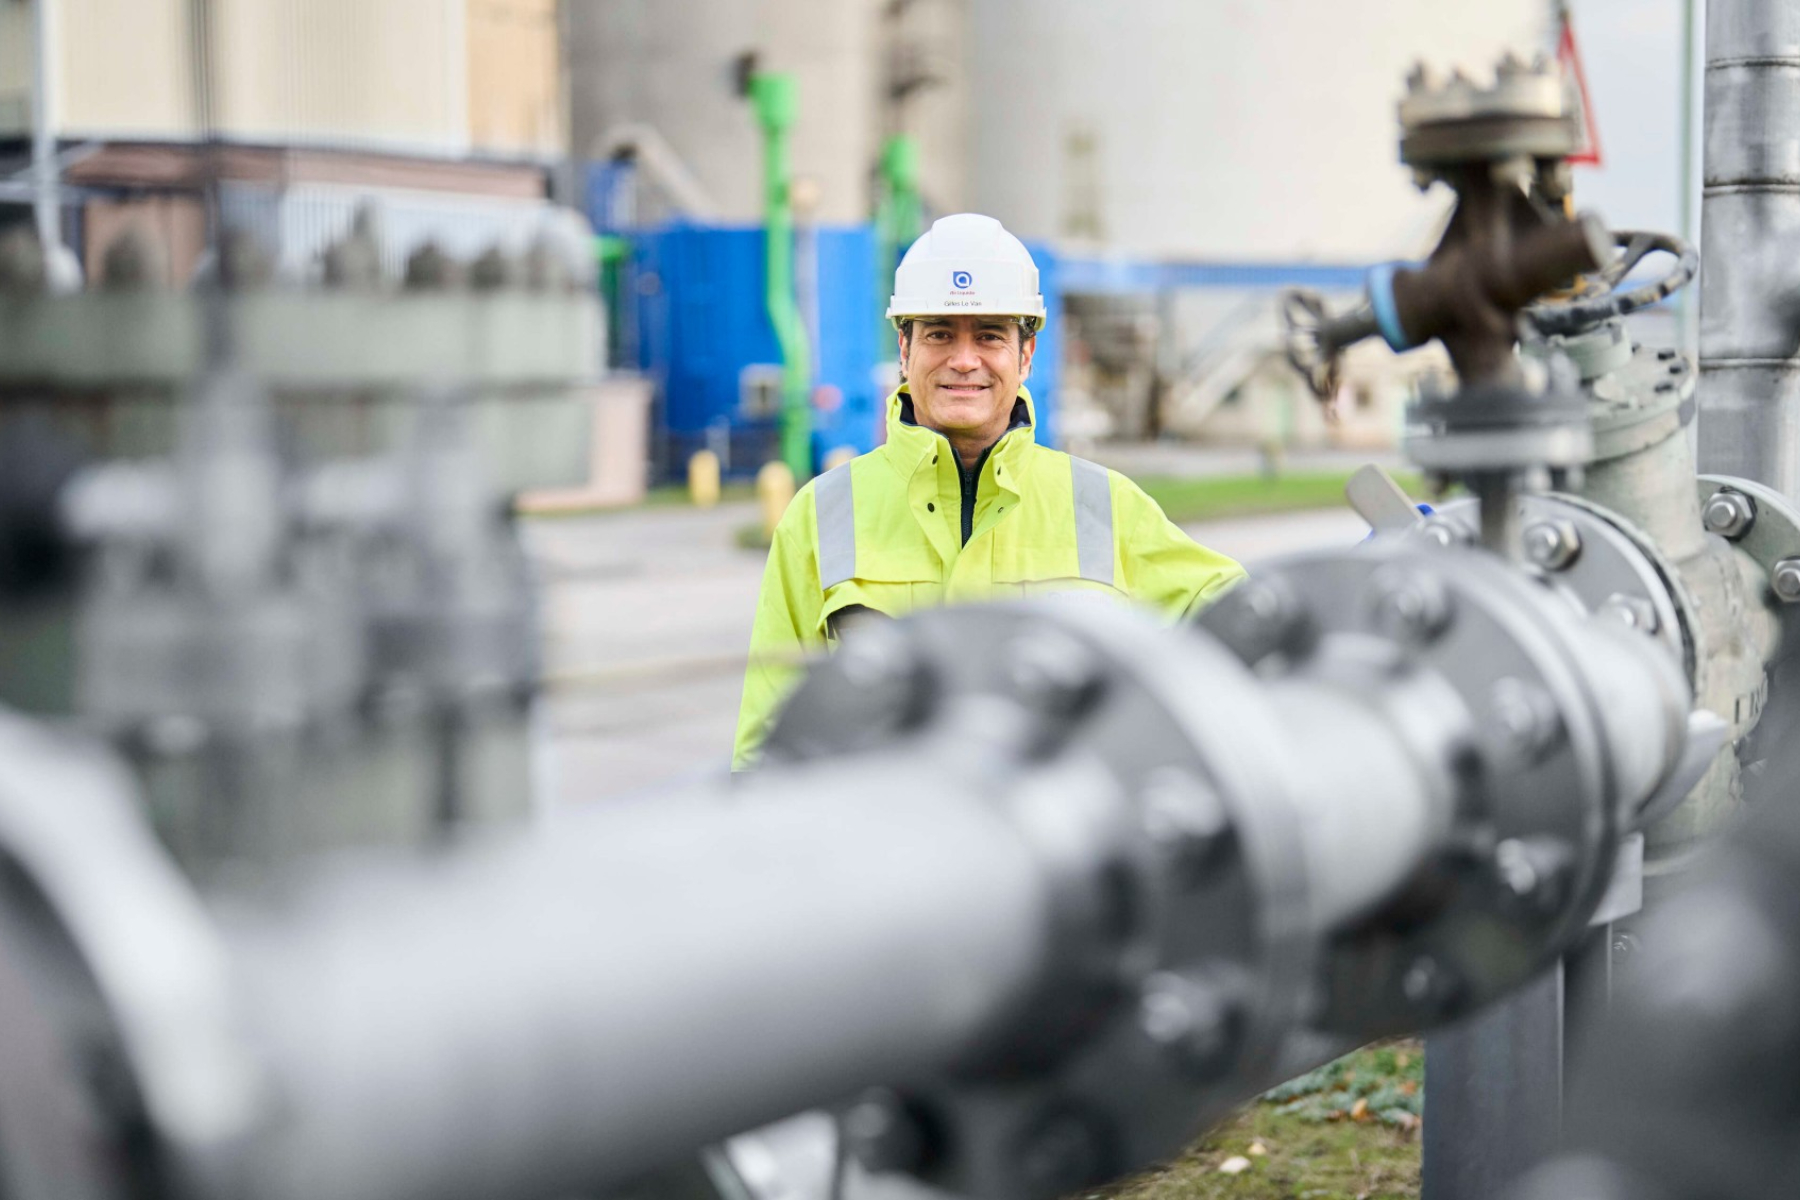 Siemens Energy publica vacantes de trabajo para ingenieros y otros profesionales